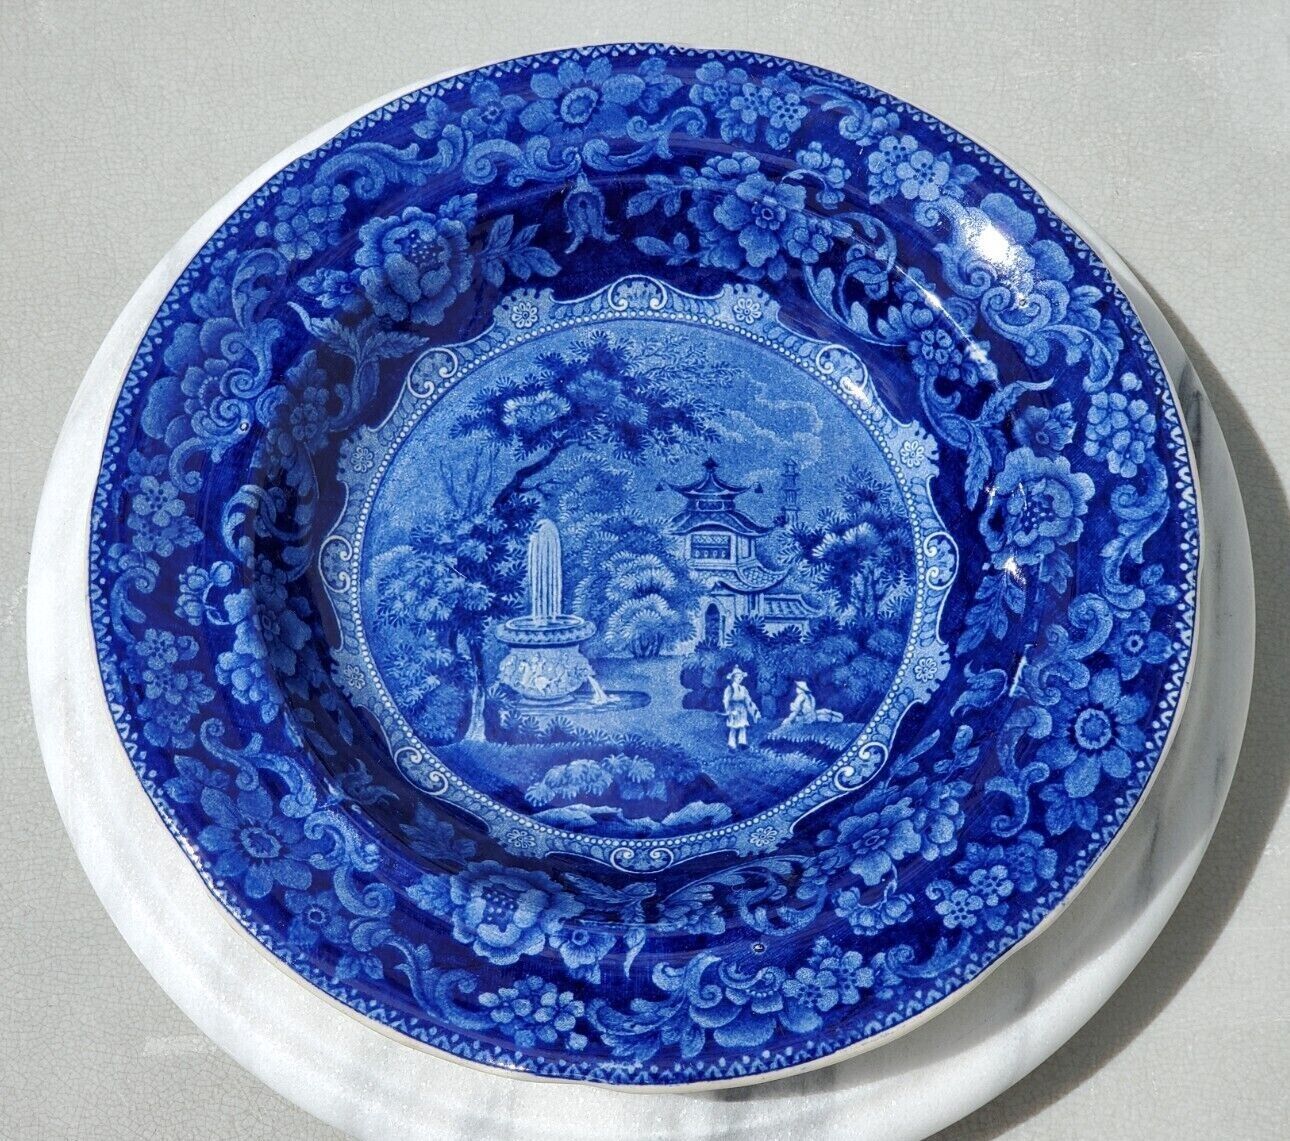 ANTIQUE JOSEPH HEATH CHINESE DARK BLUE TRANSFERWARE PLATE 1830 Chinoiserie